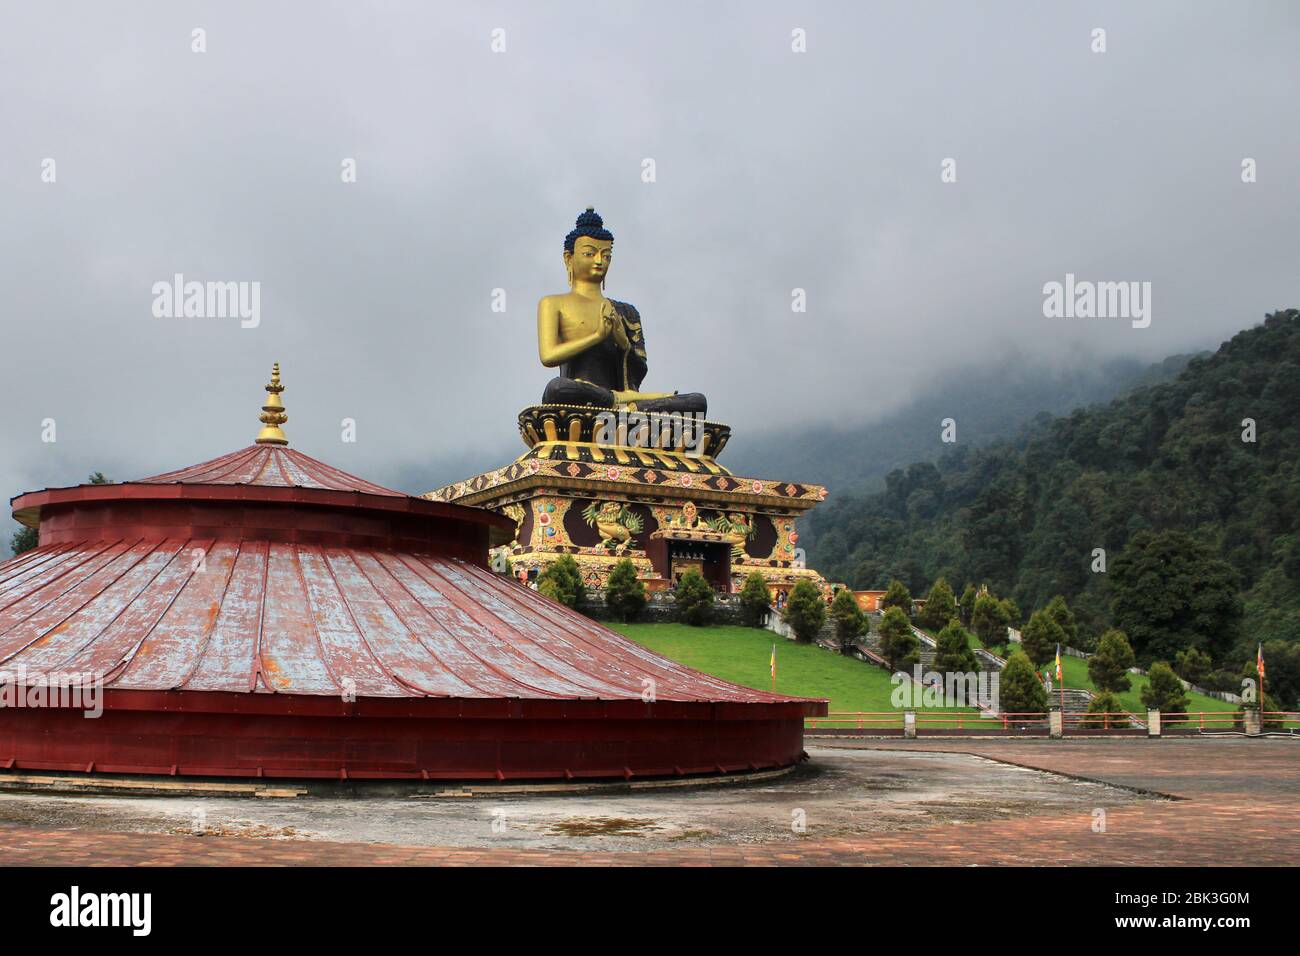 Parc de Bouddha de Ravangla. Magnifique statue immense de Bouddha, à Rabangla , Sikkim , Inde. Statue de Bouddha Gautama dans le parc de Bouddha de Ravangla. Banque D'Images